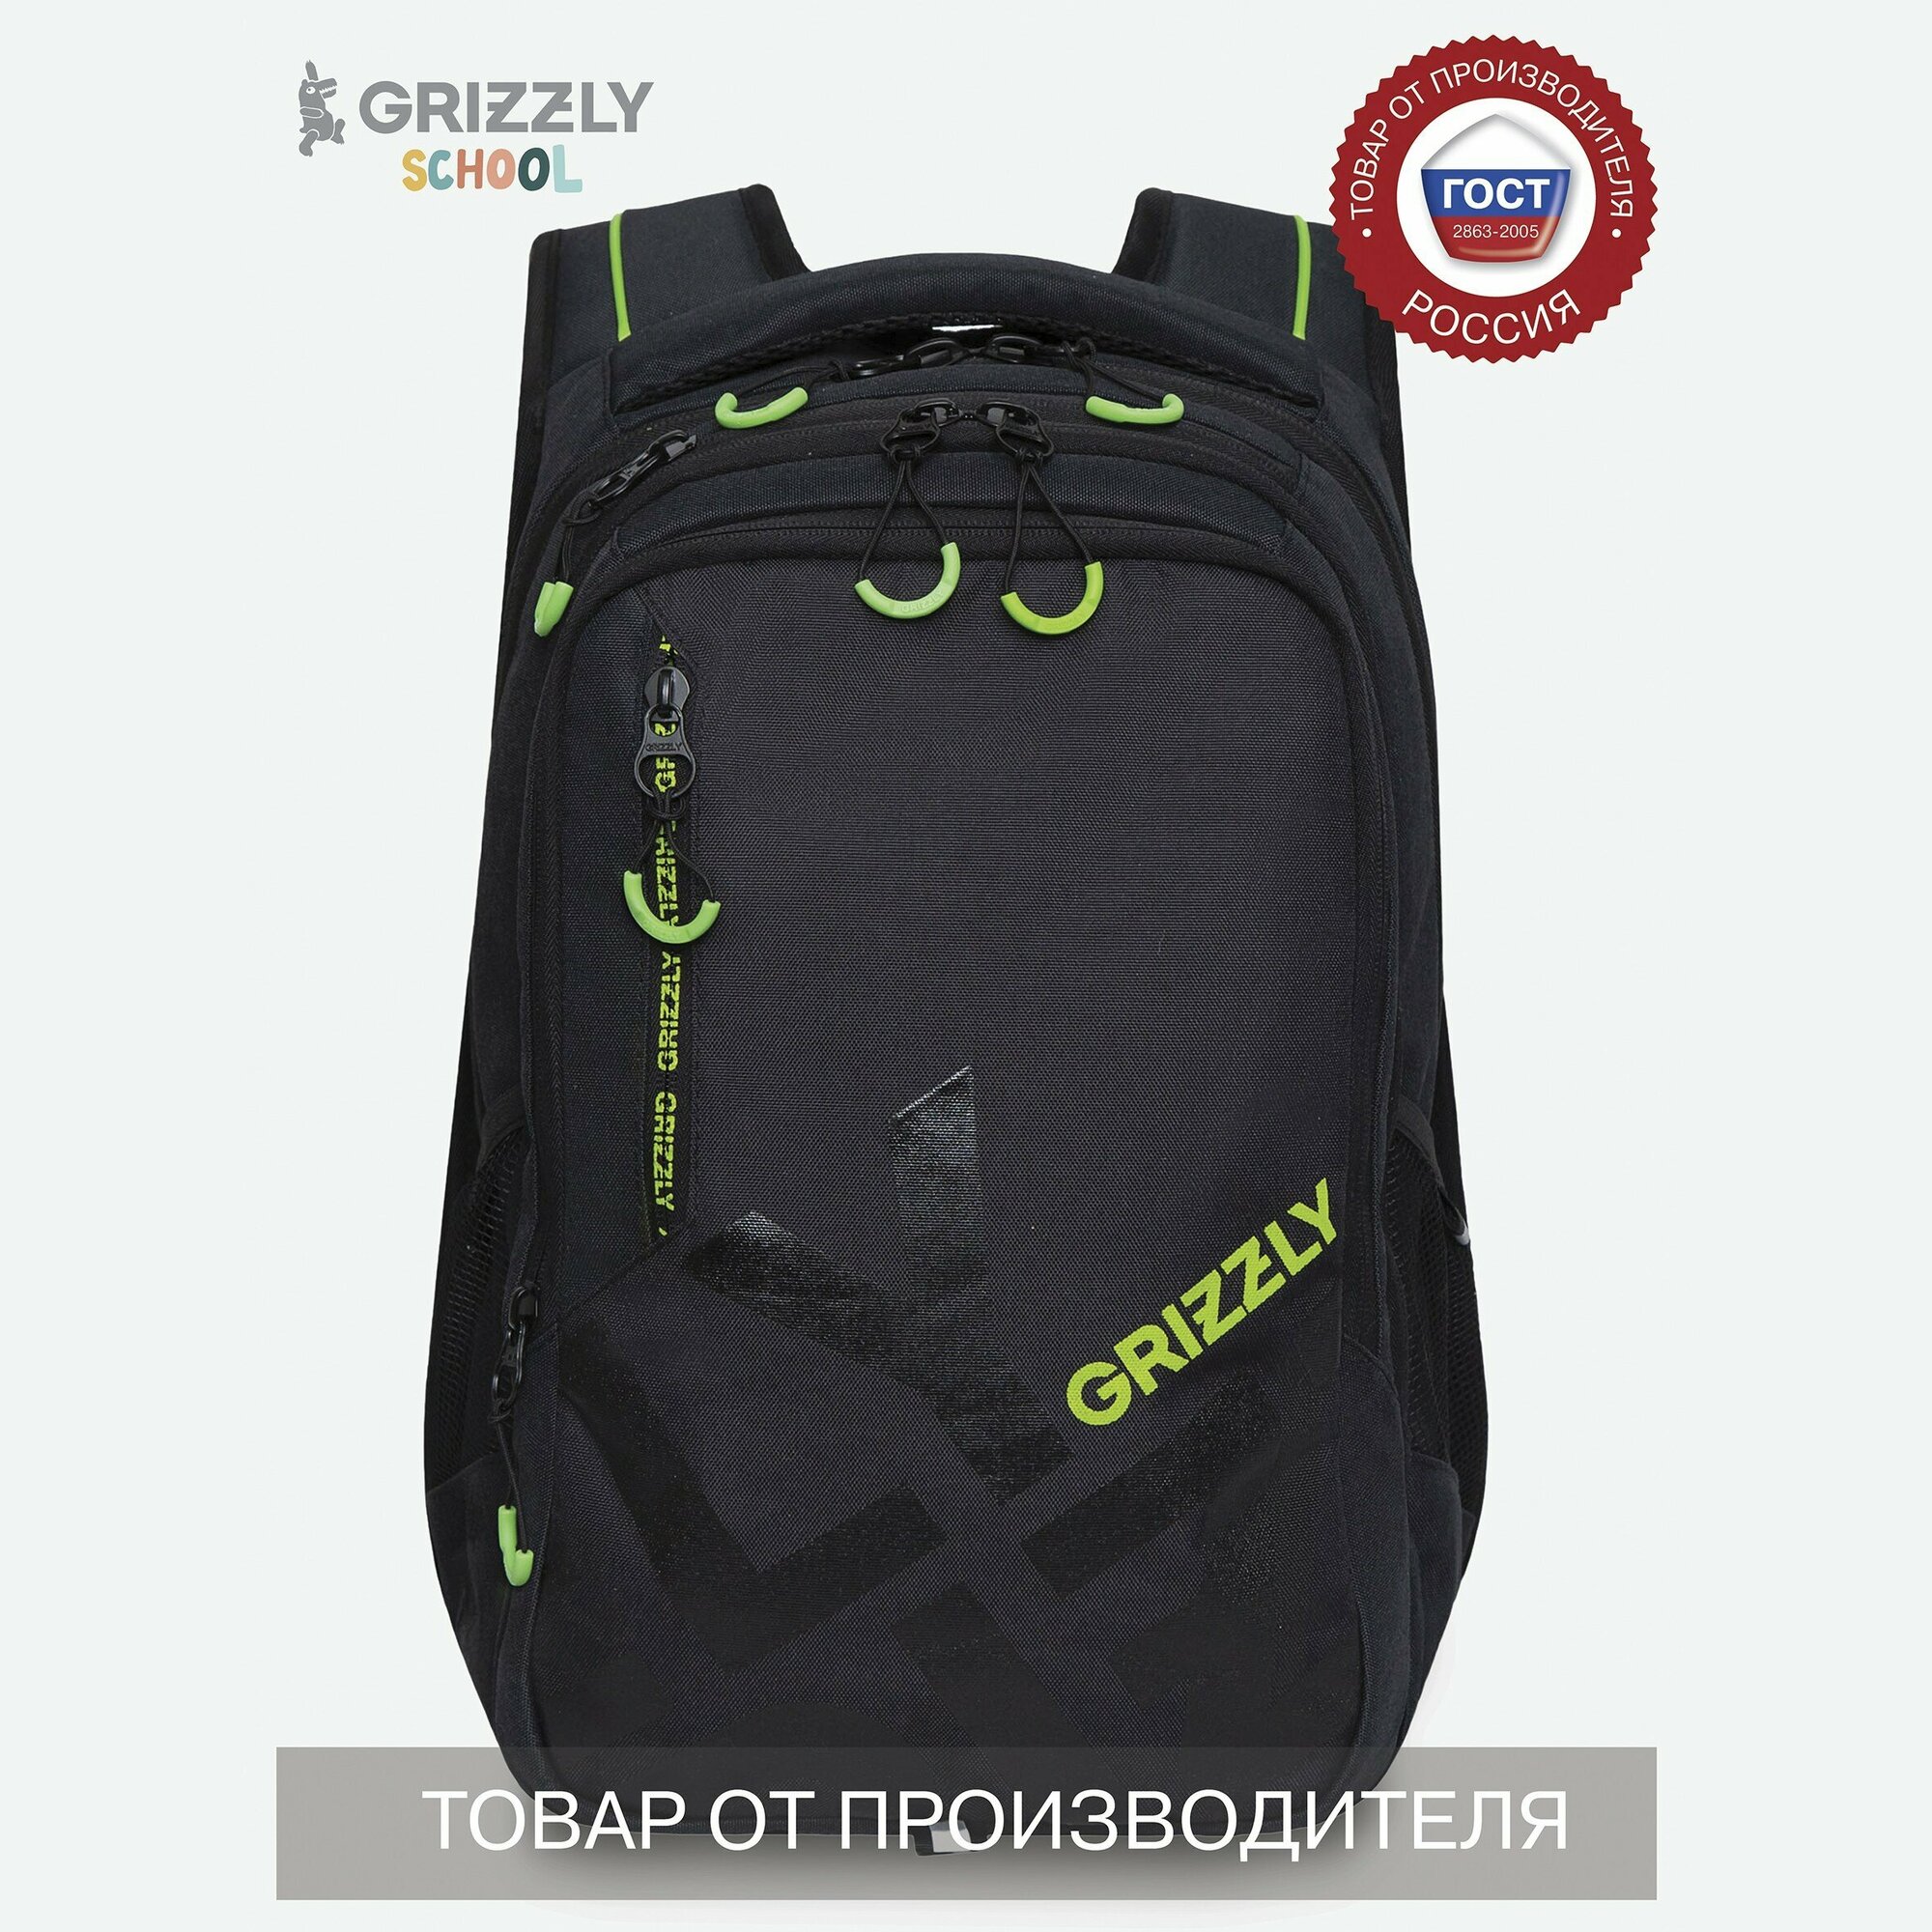 Вместительный школьный рюкзак GRIZZLY (мужской) - сохраняет правильную осанку RU-338-2/1